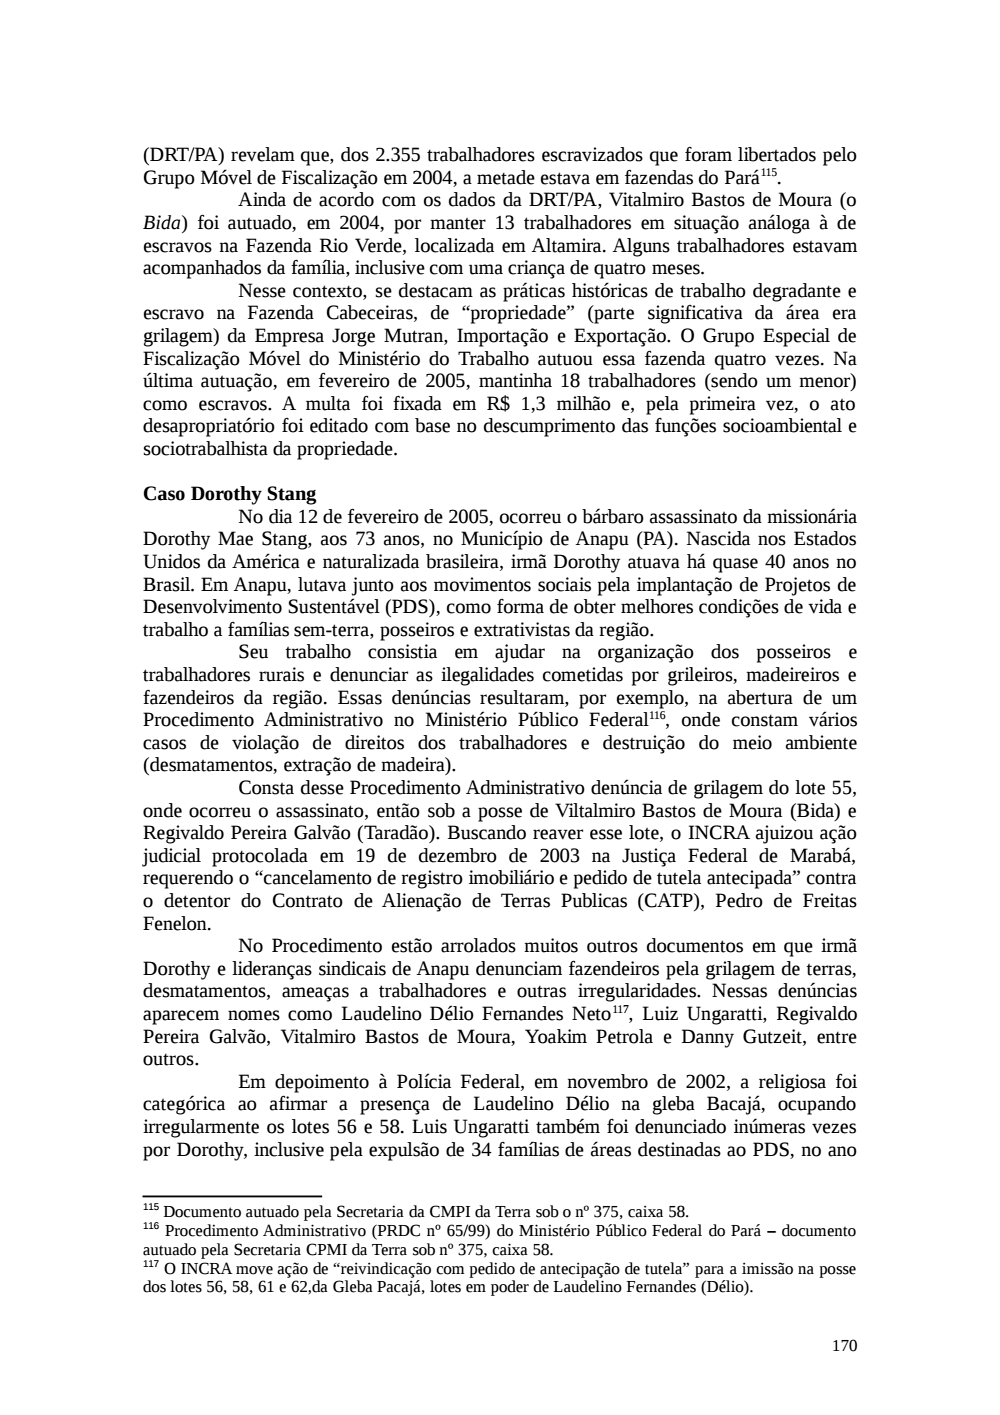 Page 170 from Relatório final da comissão